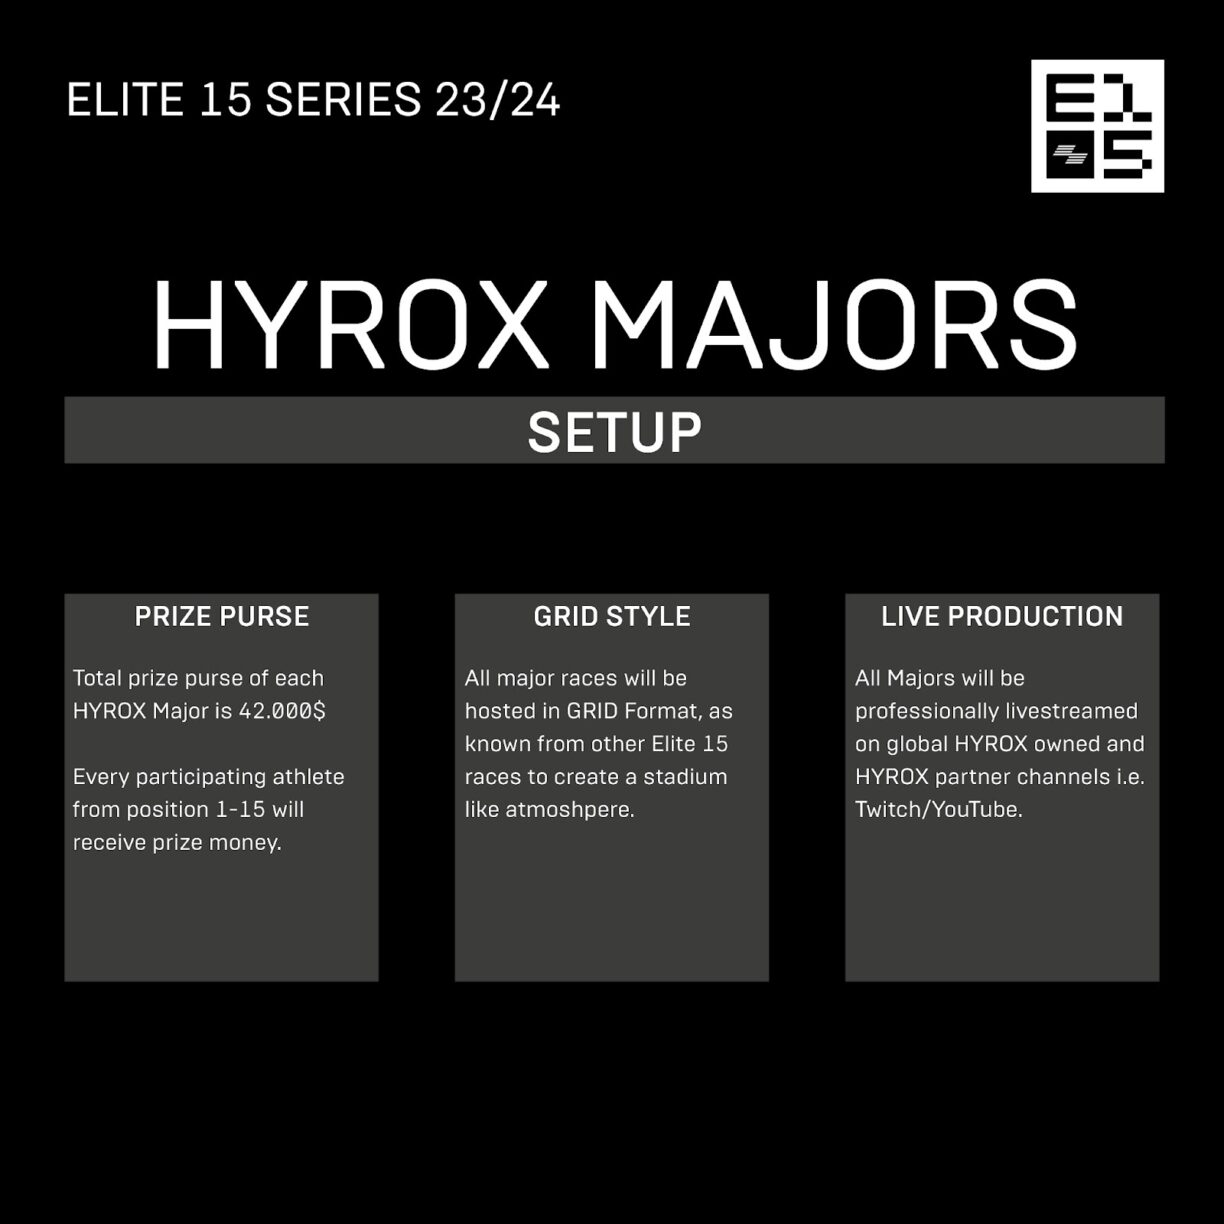 Hyrox majors setup